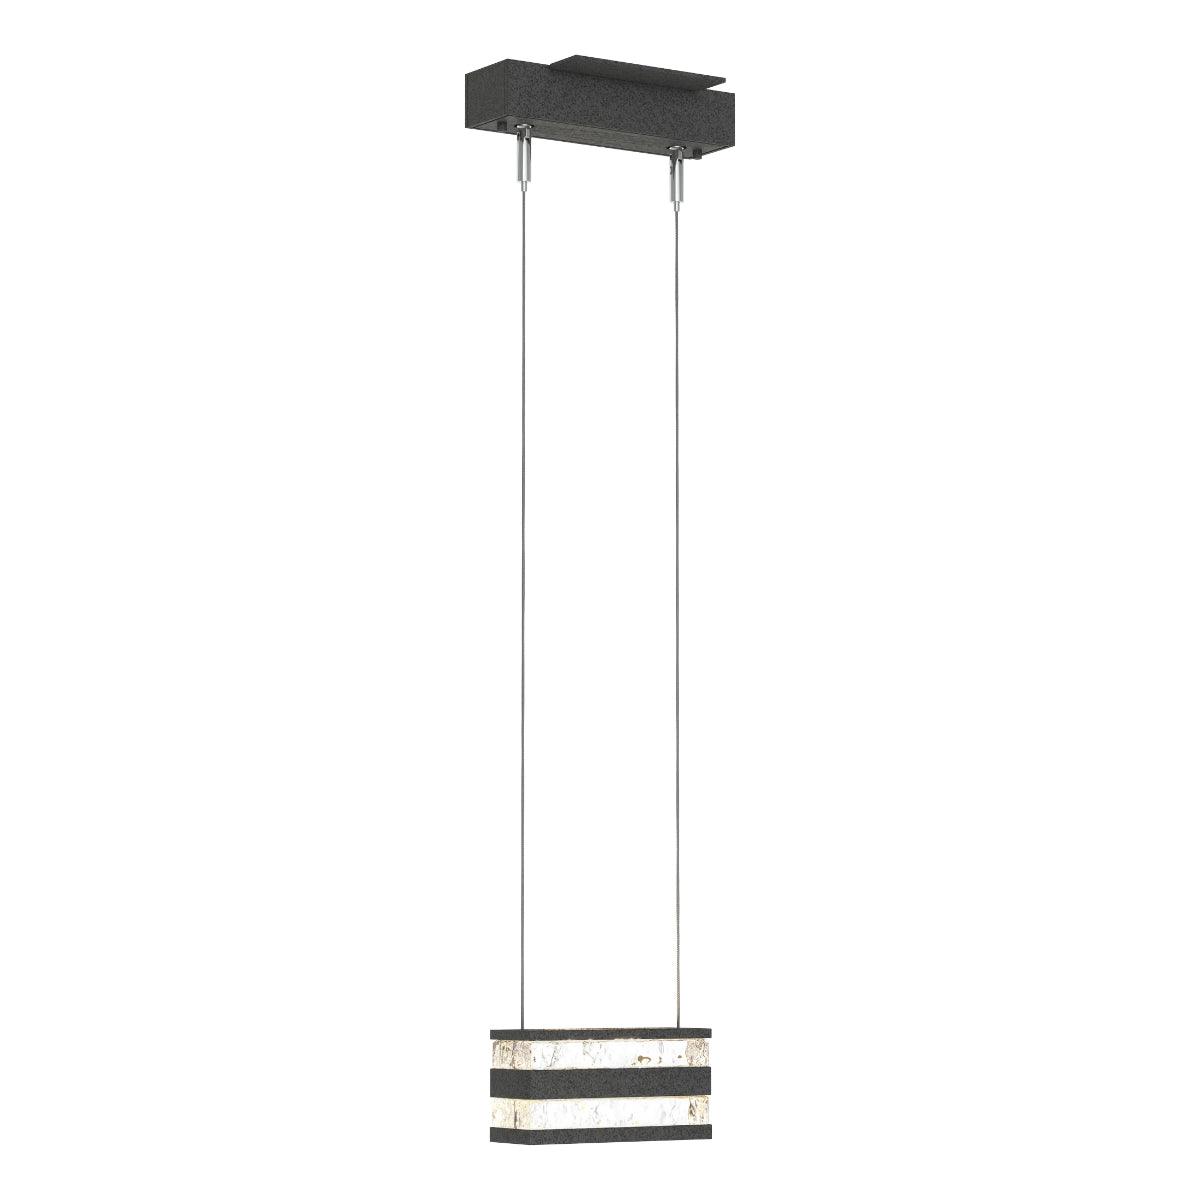 Stacks 6 in. Single LED Pendant Light